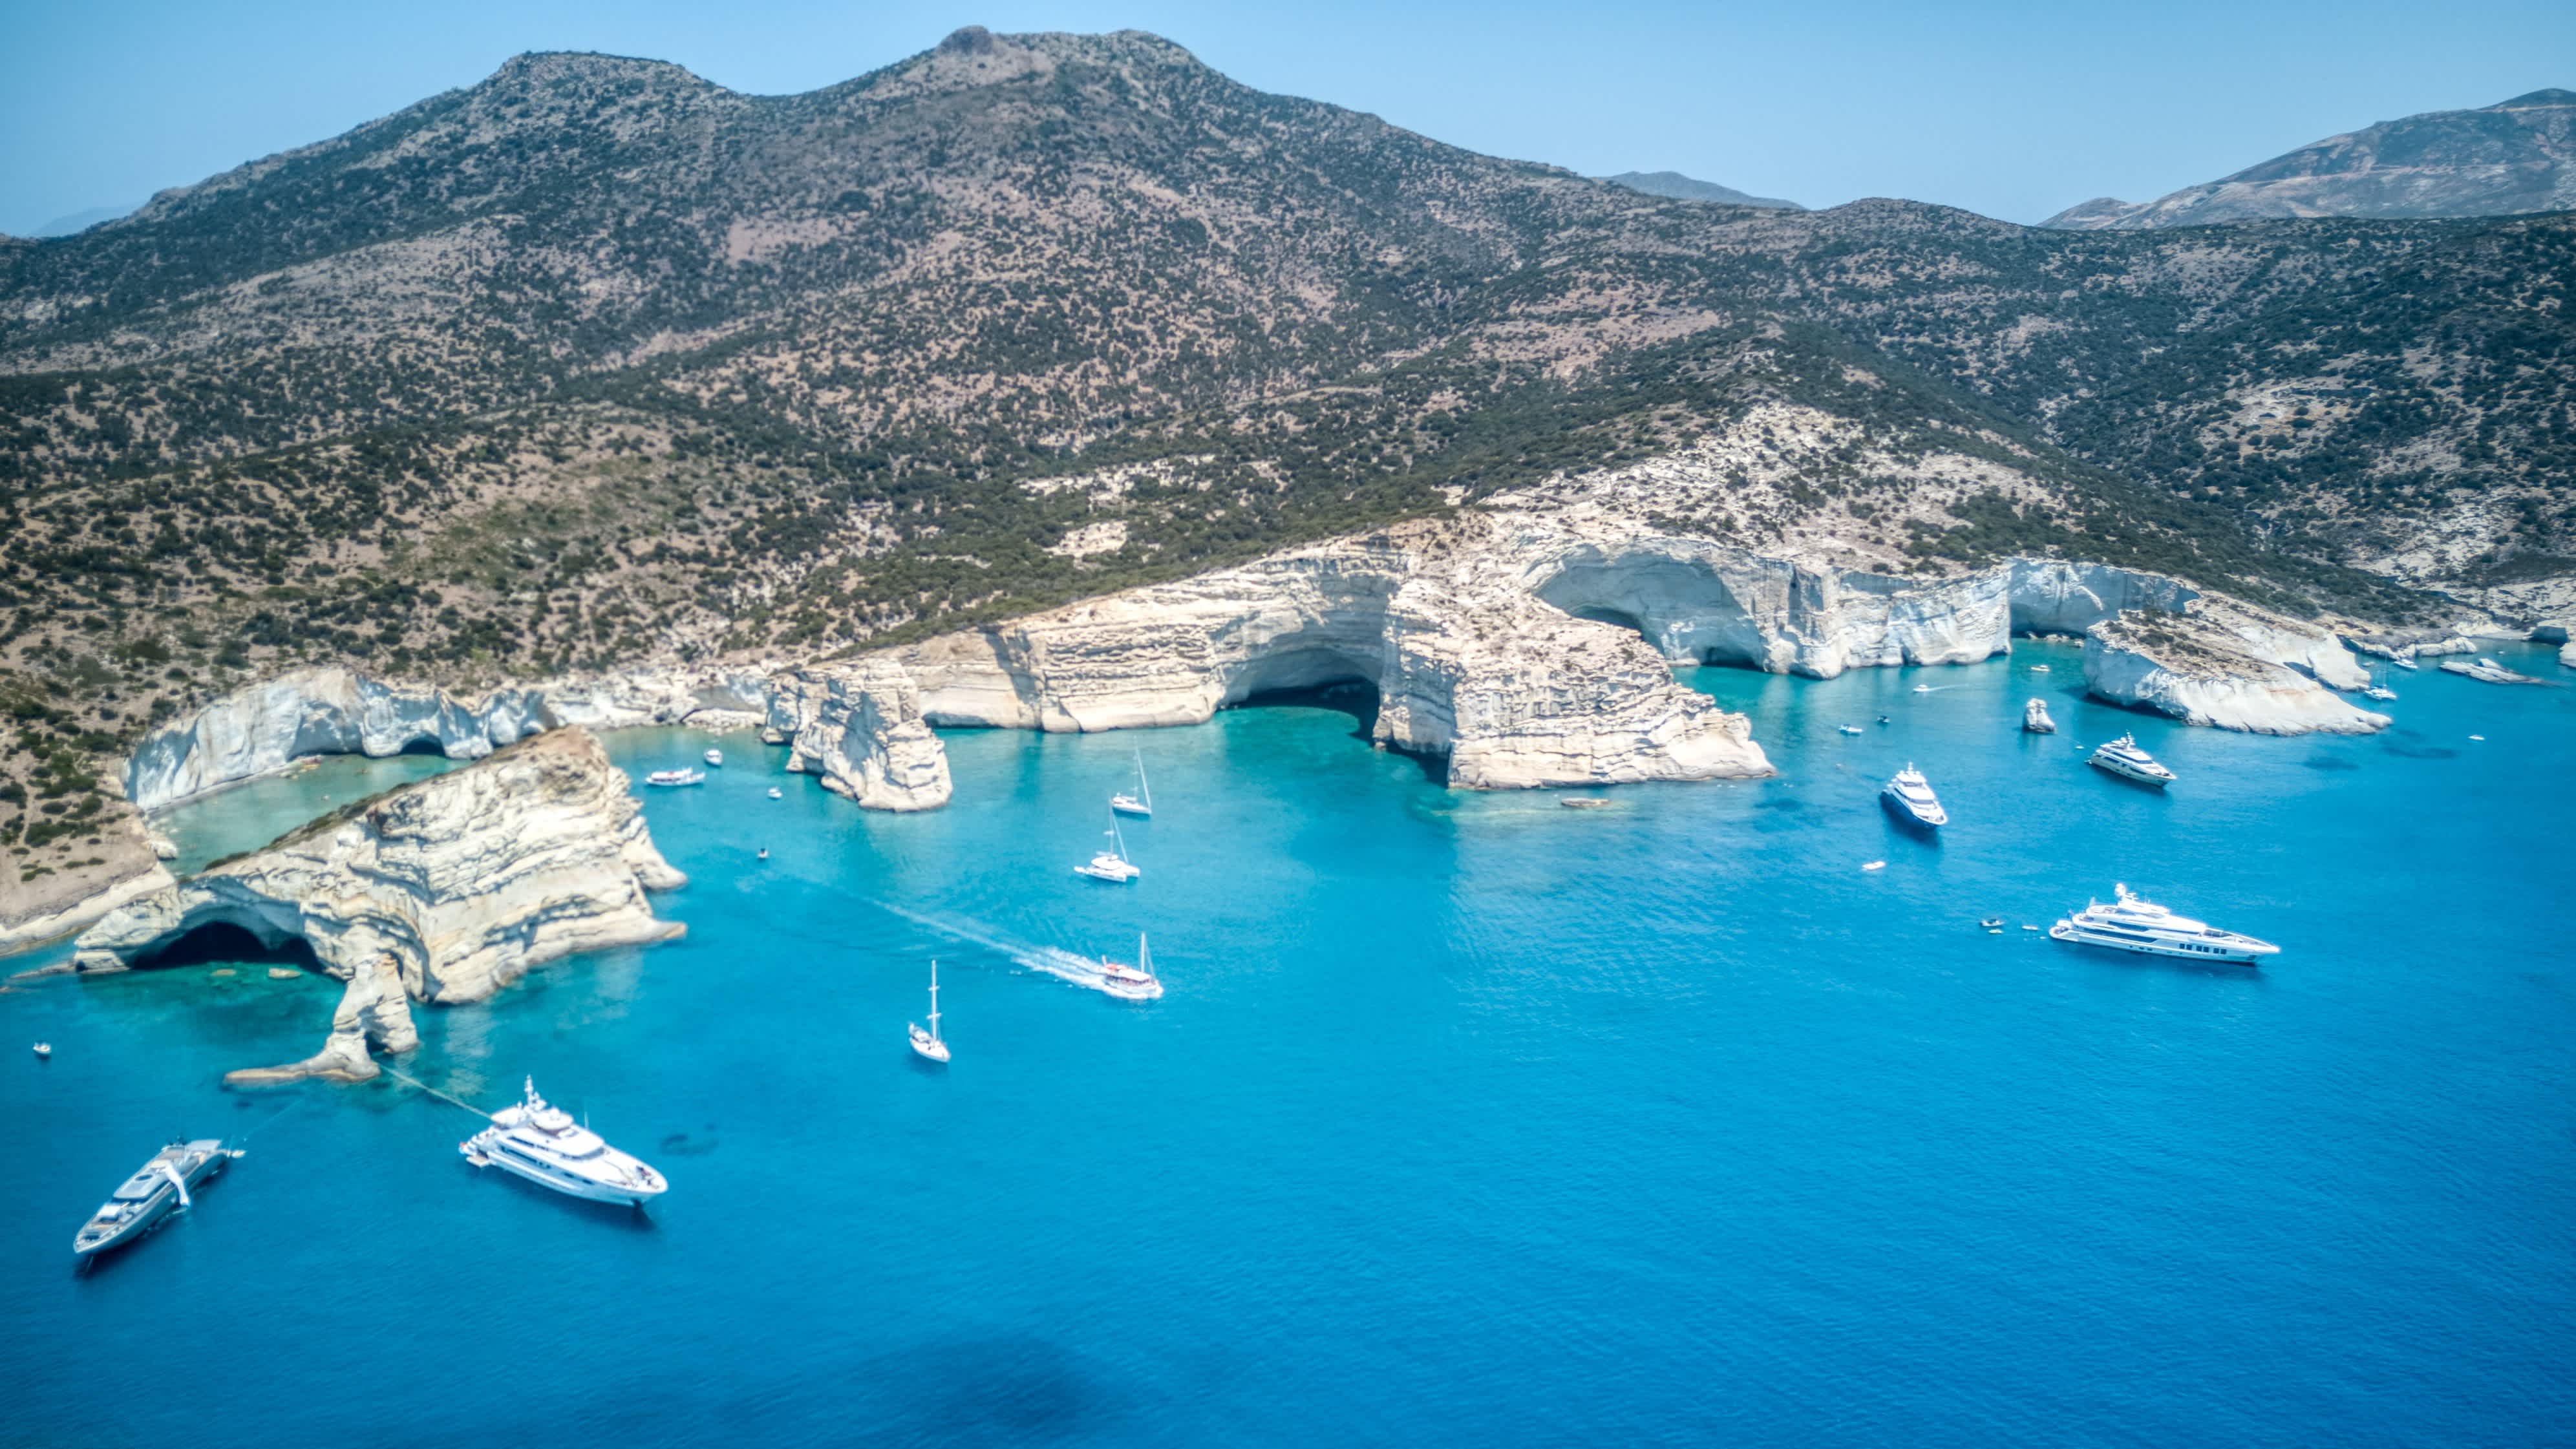 Vue aérienne de la baie de Kleftiko sur l'île de Milos, en Grèce, avec des bateaux sur l'eau turquoise et des falaises blanches